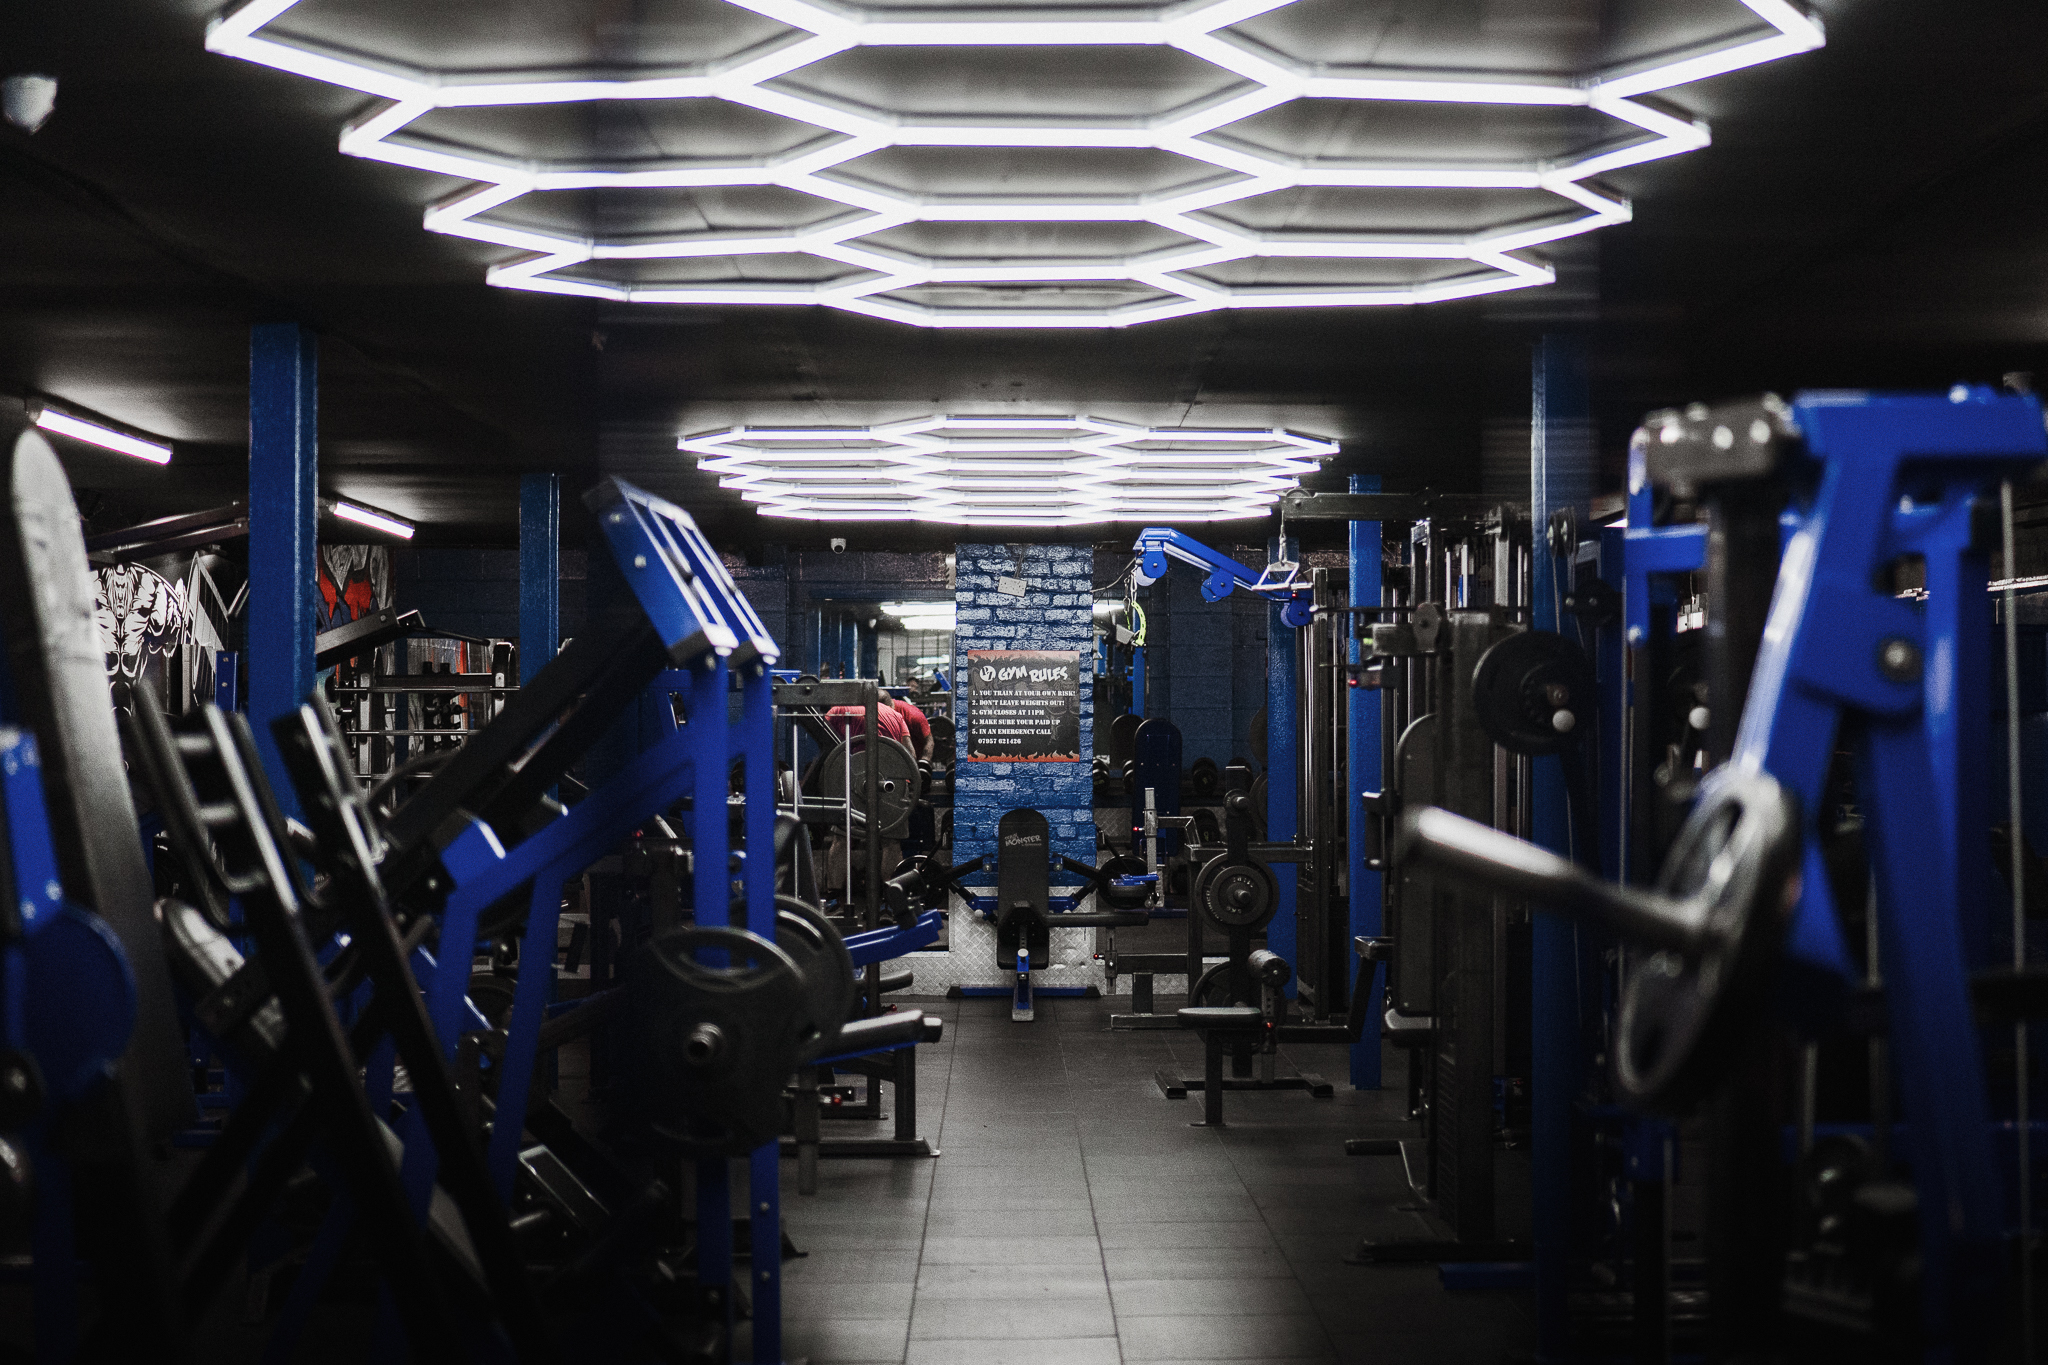 Powerzone Gym – Train Like A Monster